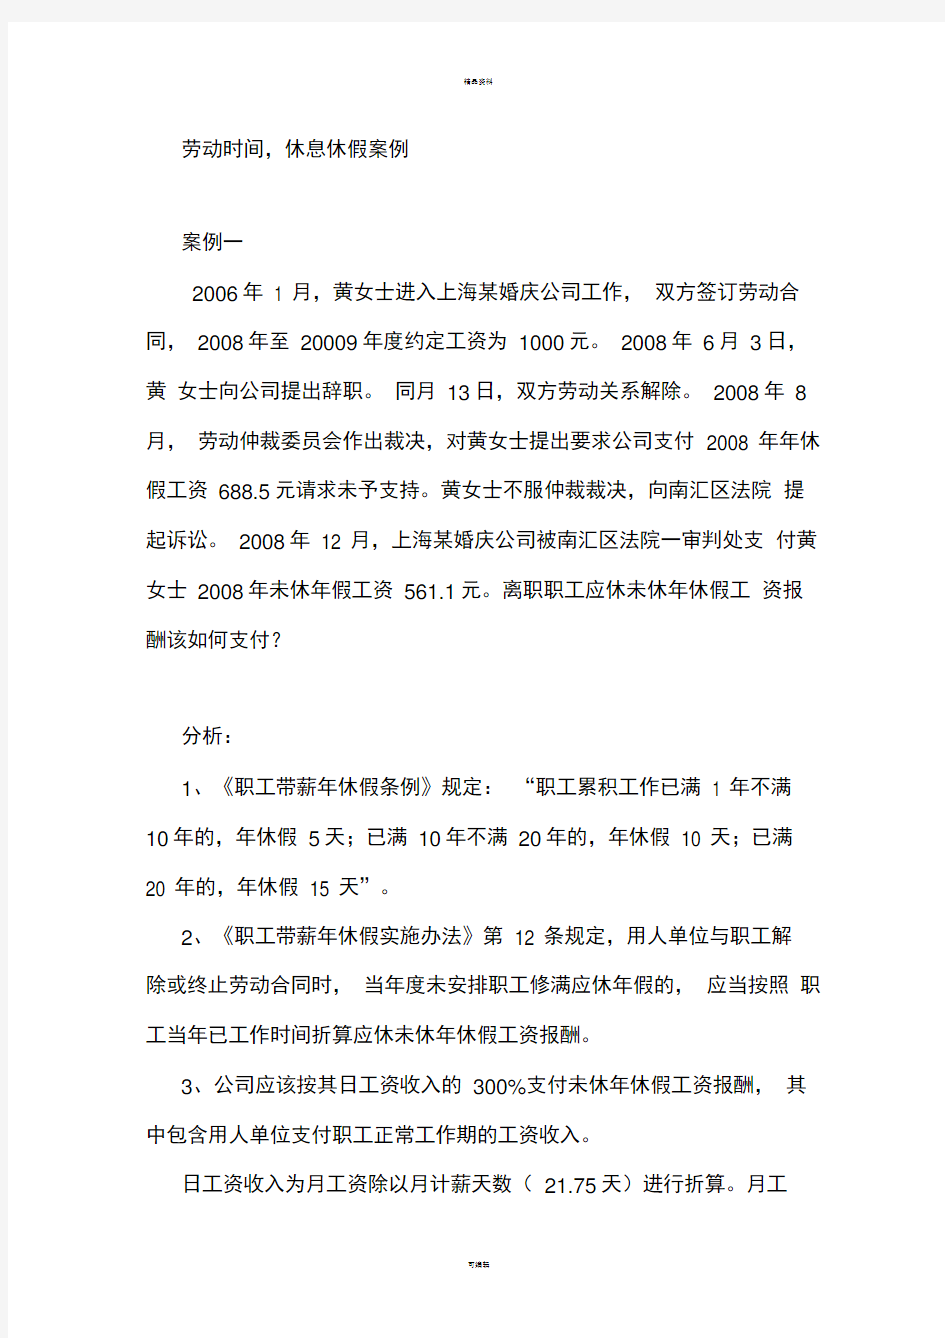 上海劳动关系协调员案例4